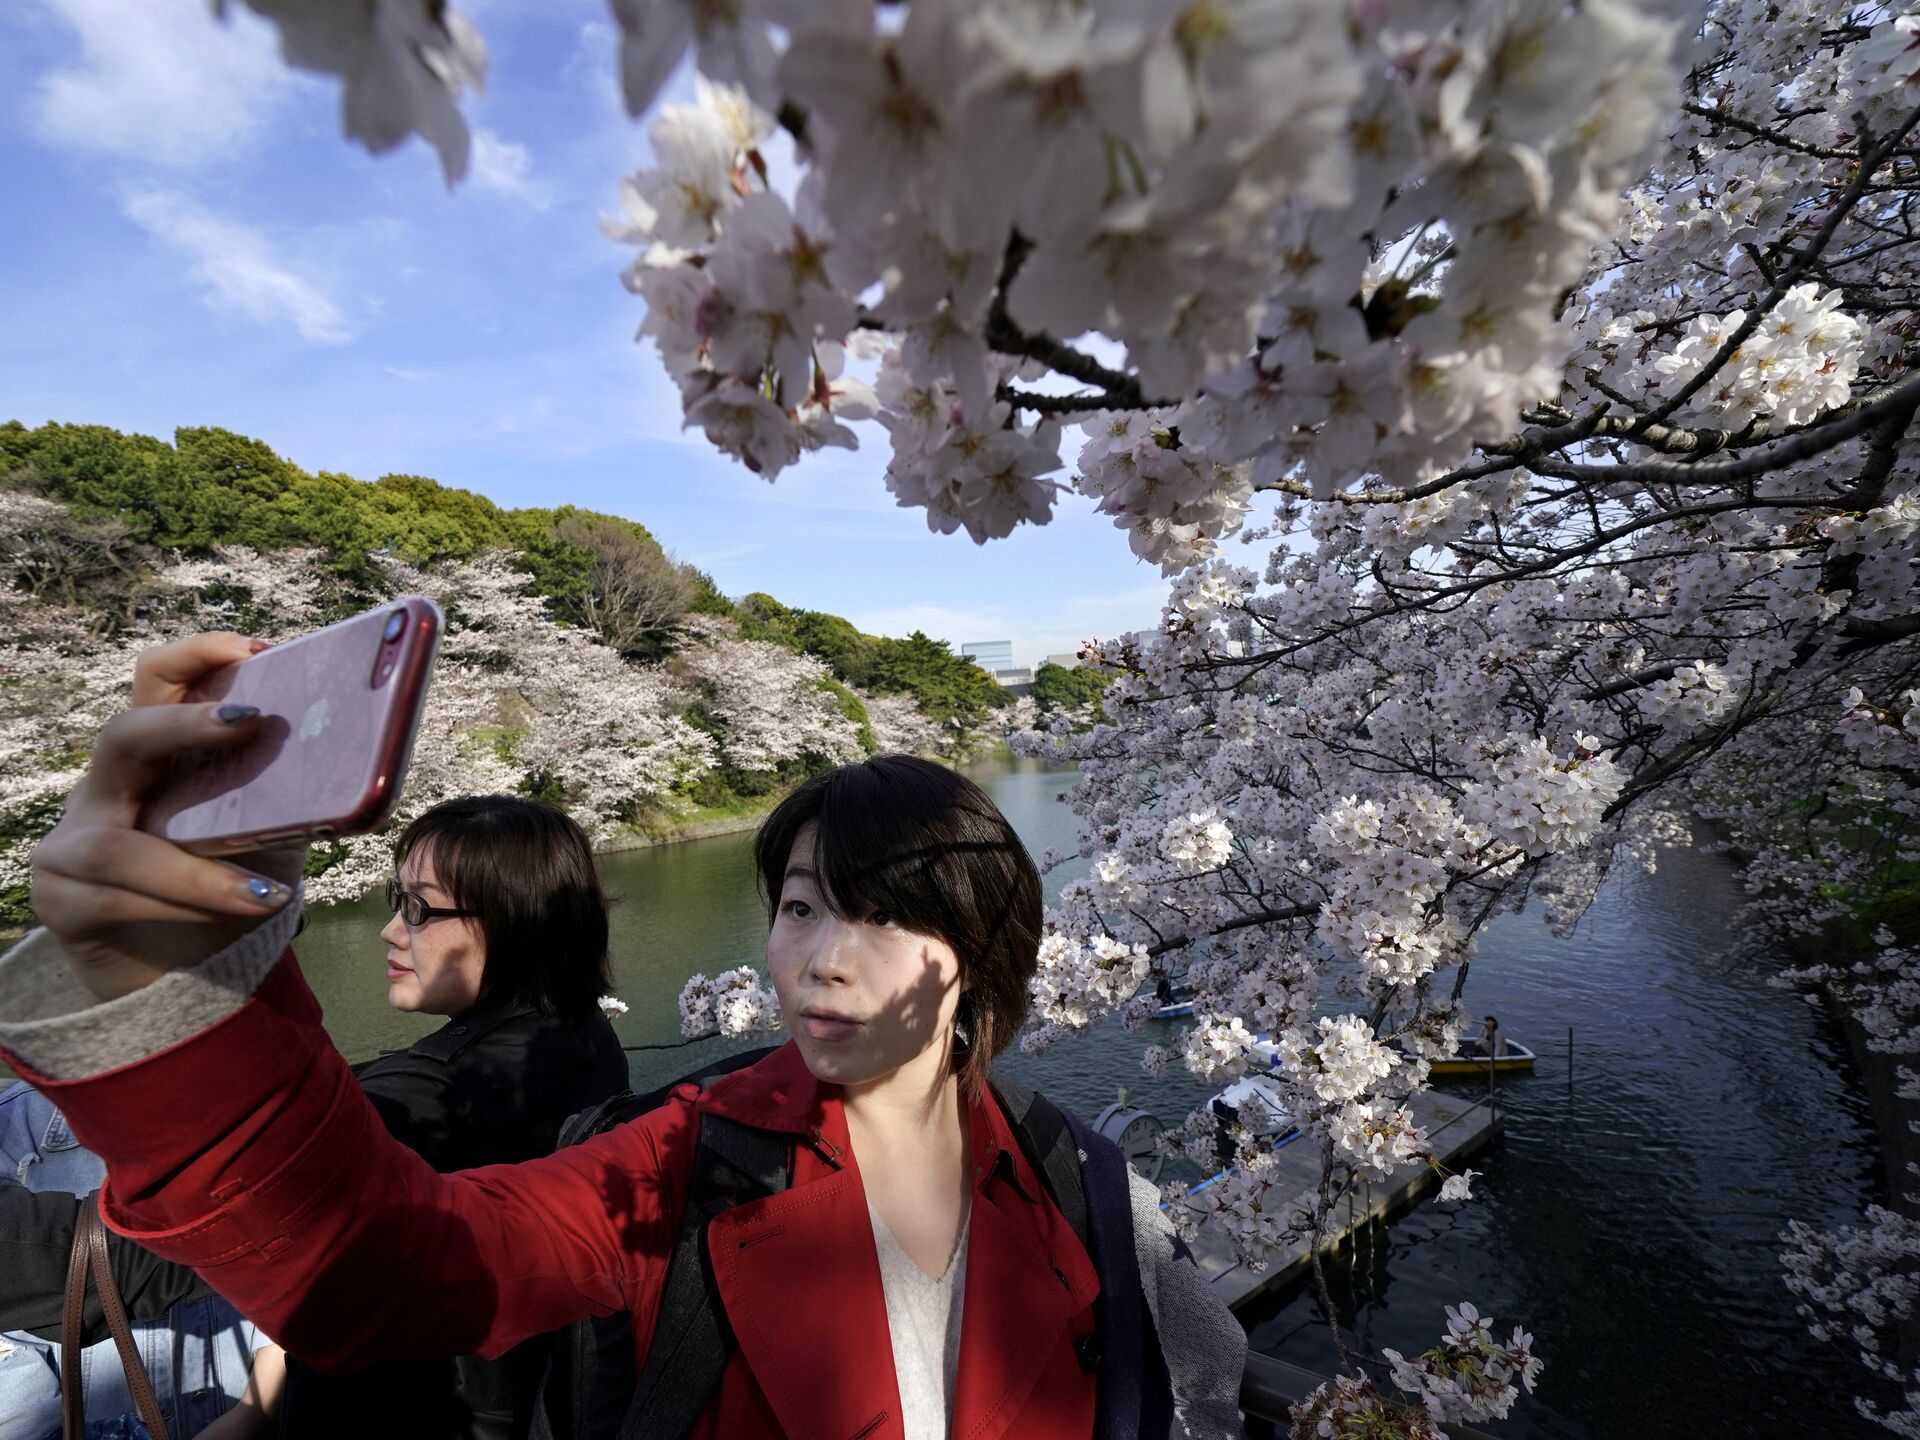 Цветение сакуры в Японии в этом году начнется раньше - РИА Новости,  13.03.2021